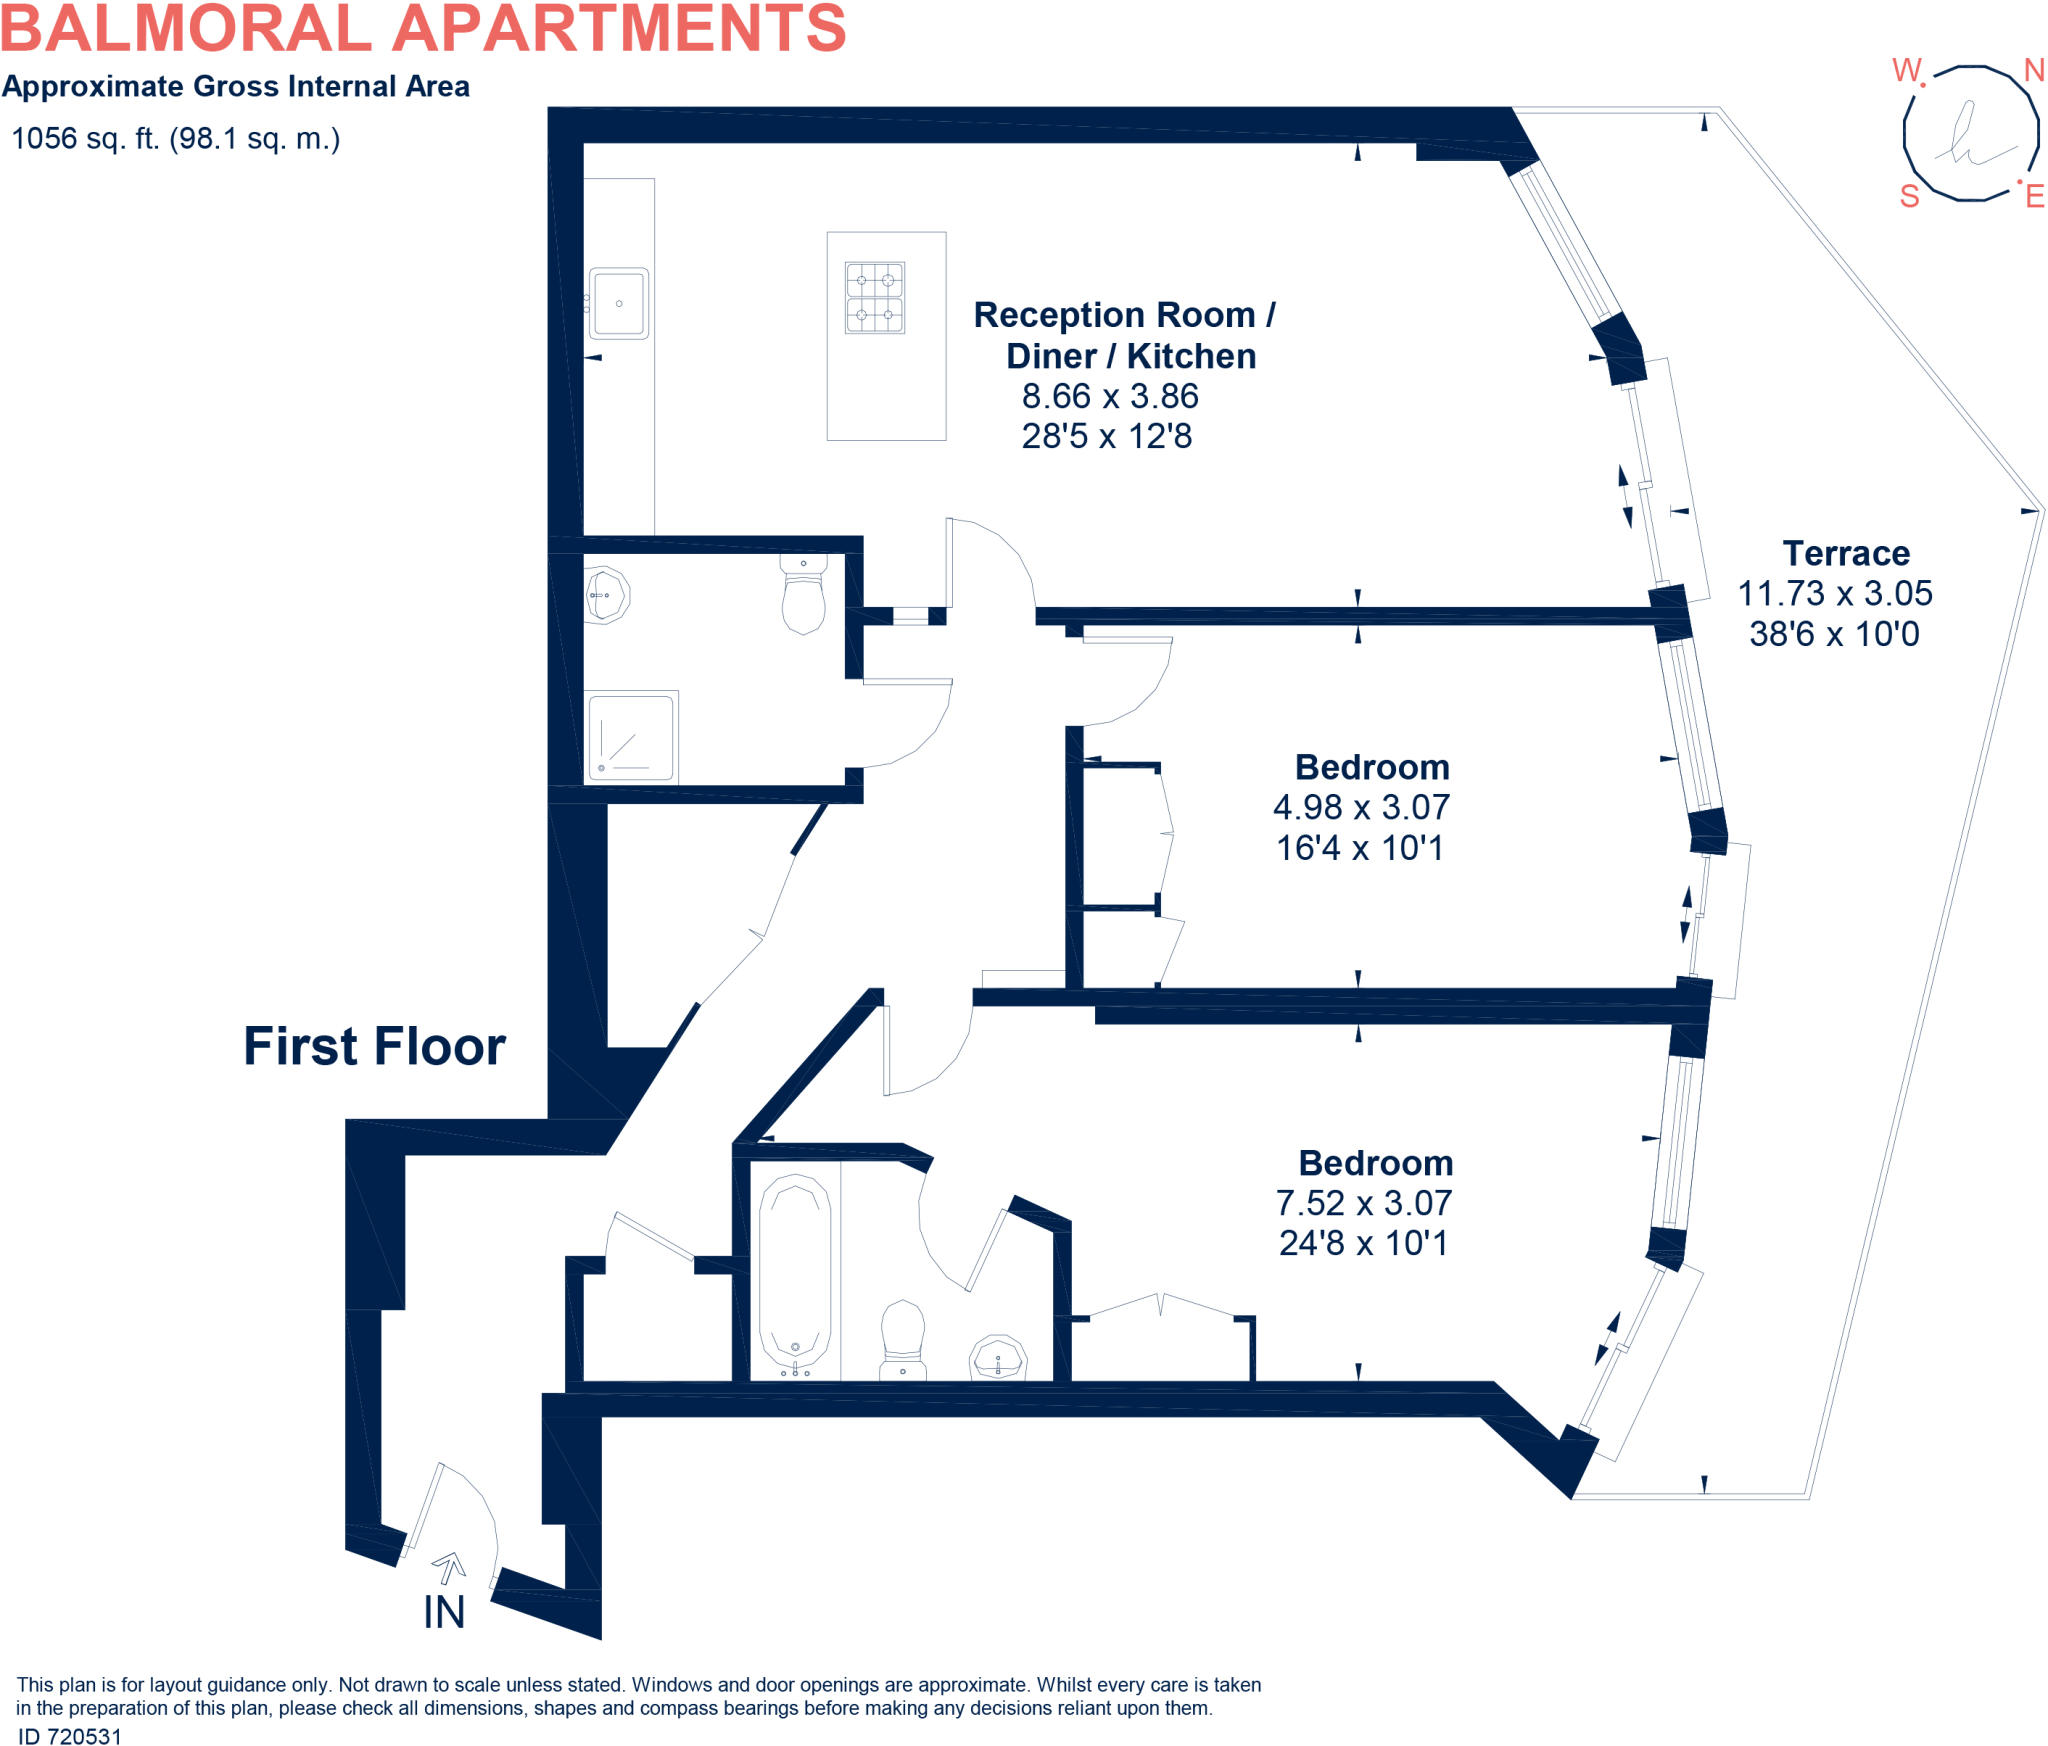 102-Balmoral-Apartments-JH-V1.wmf